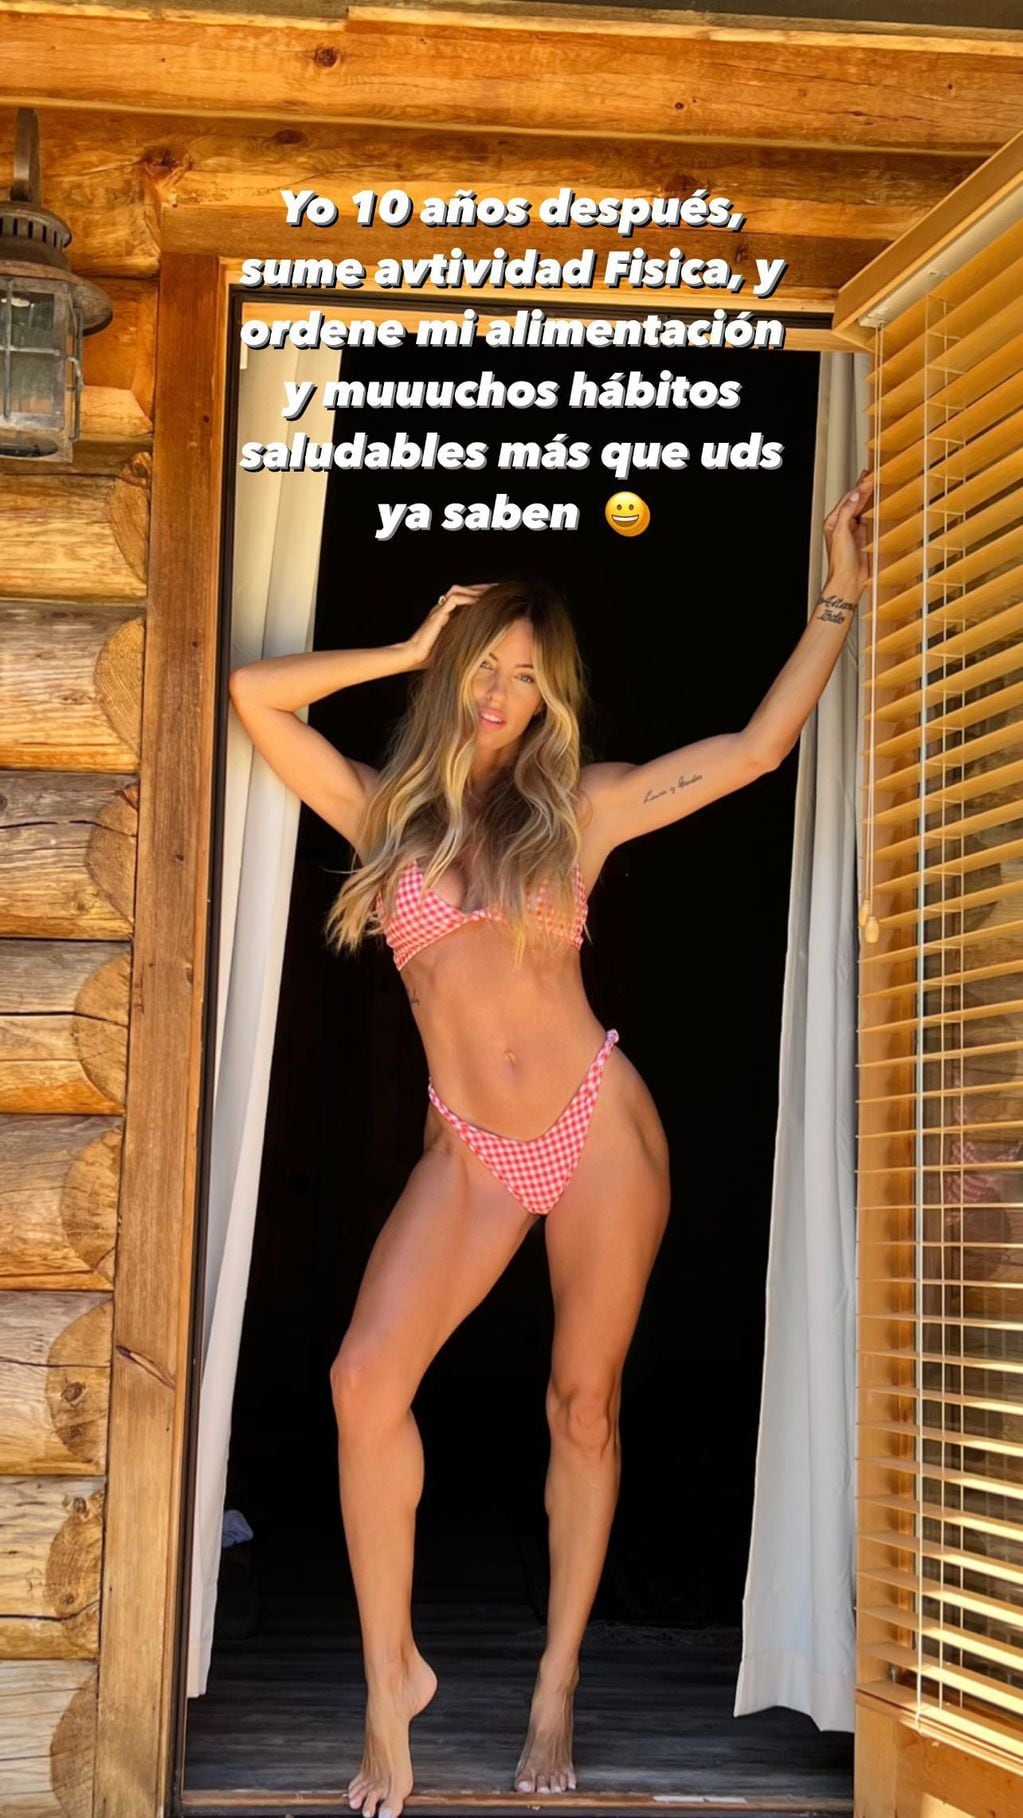 El posteo de Rocío Guirao Díaz celebrando la vida saludable.